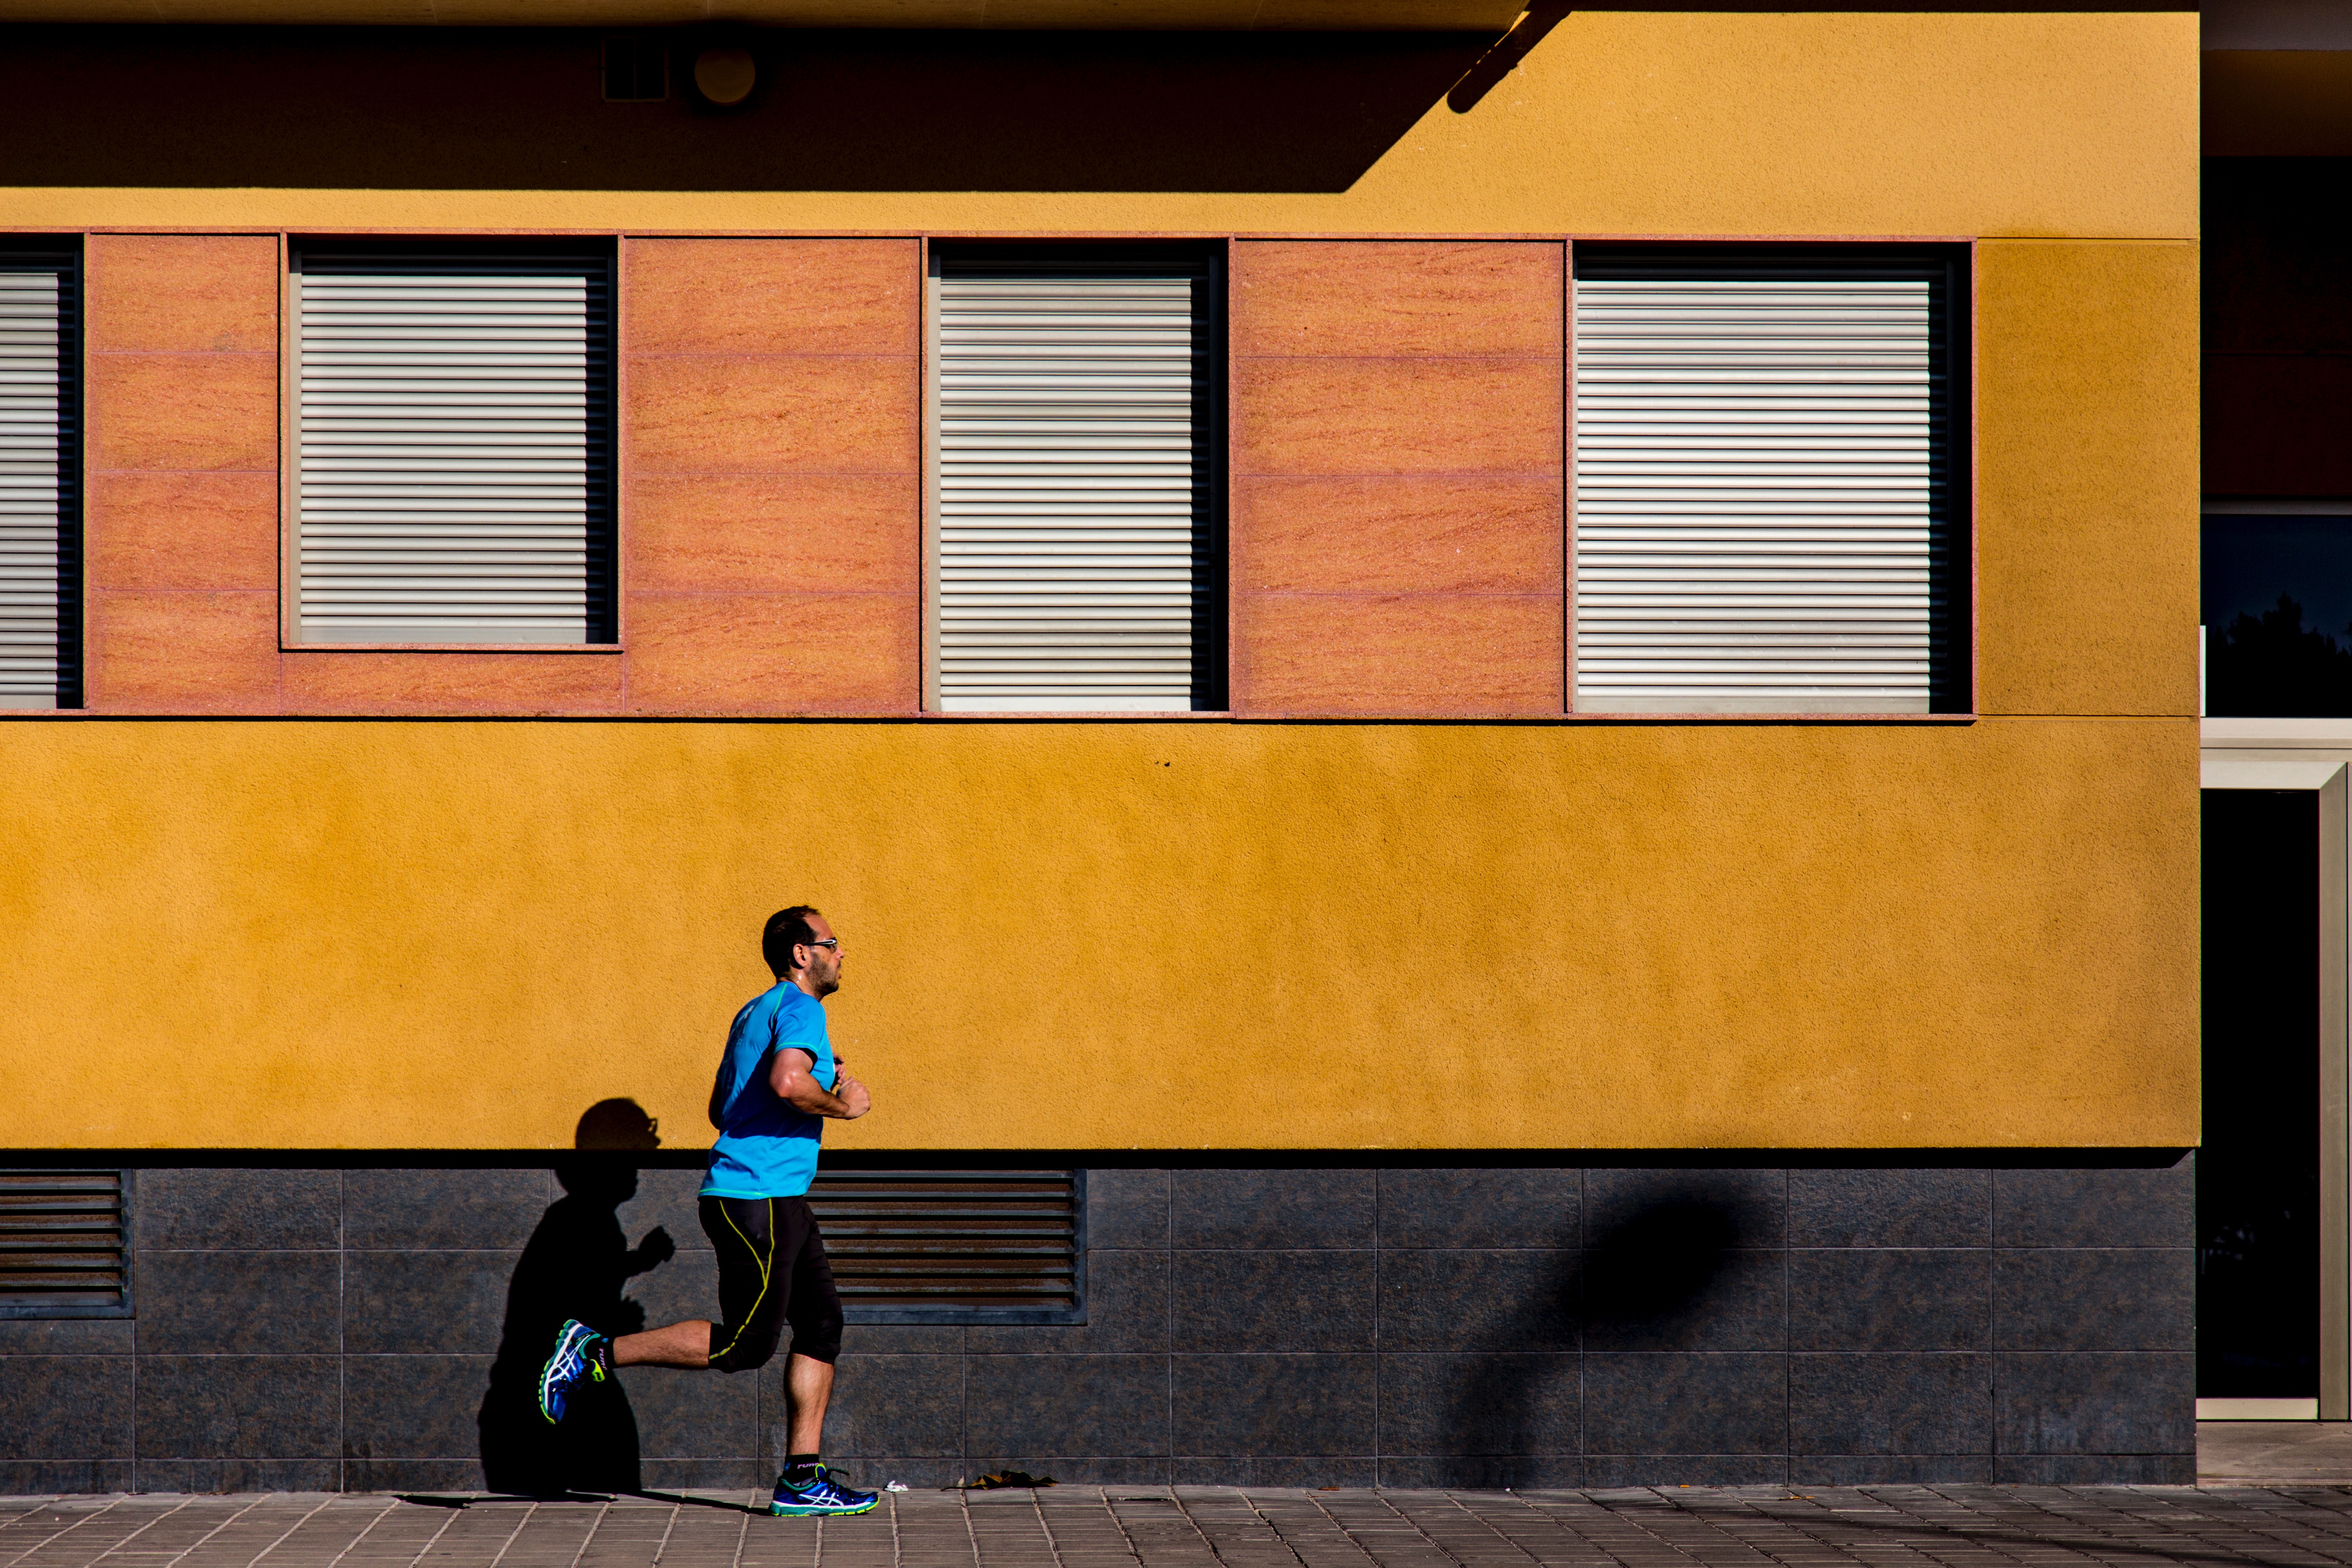 Jogging man wearing blue shirt during daytime photo